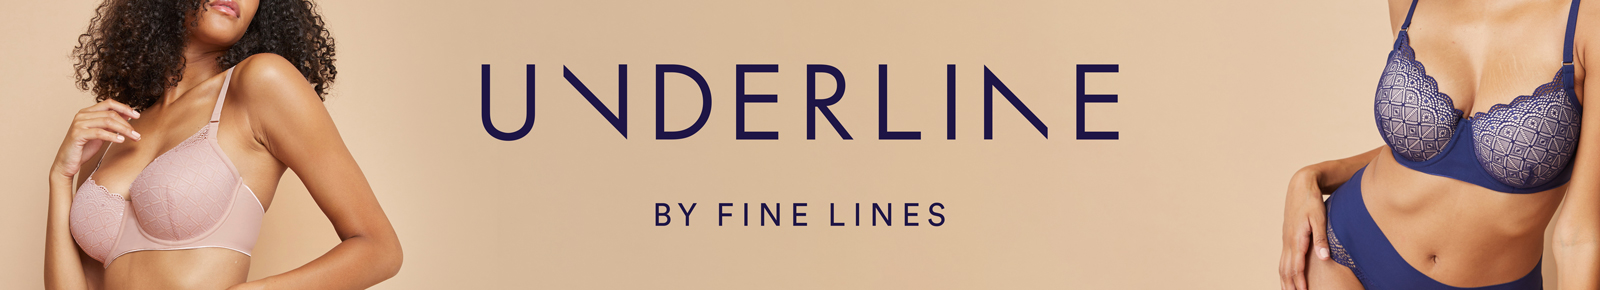 Underline, Buy Underline Bras & Underwear Online